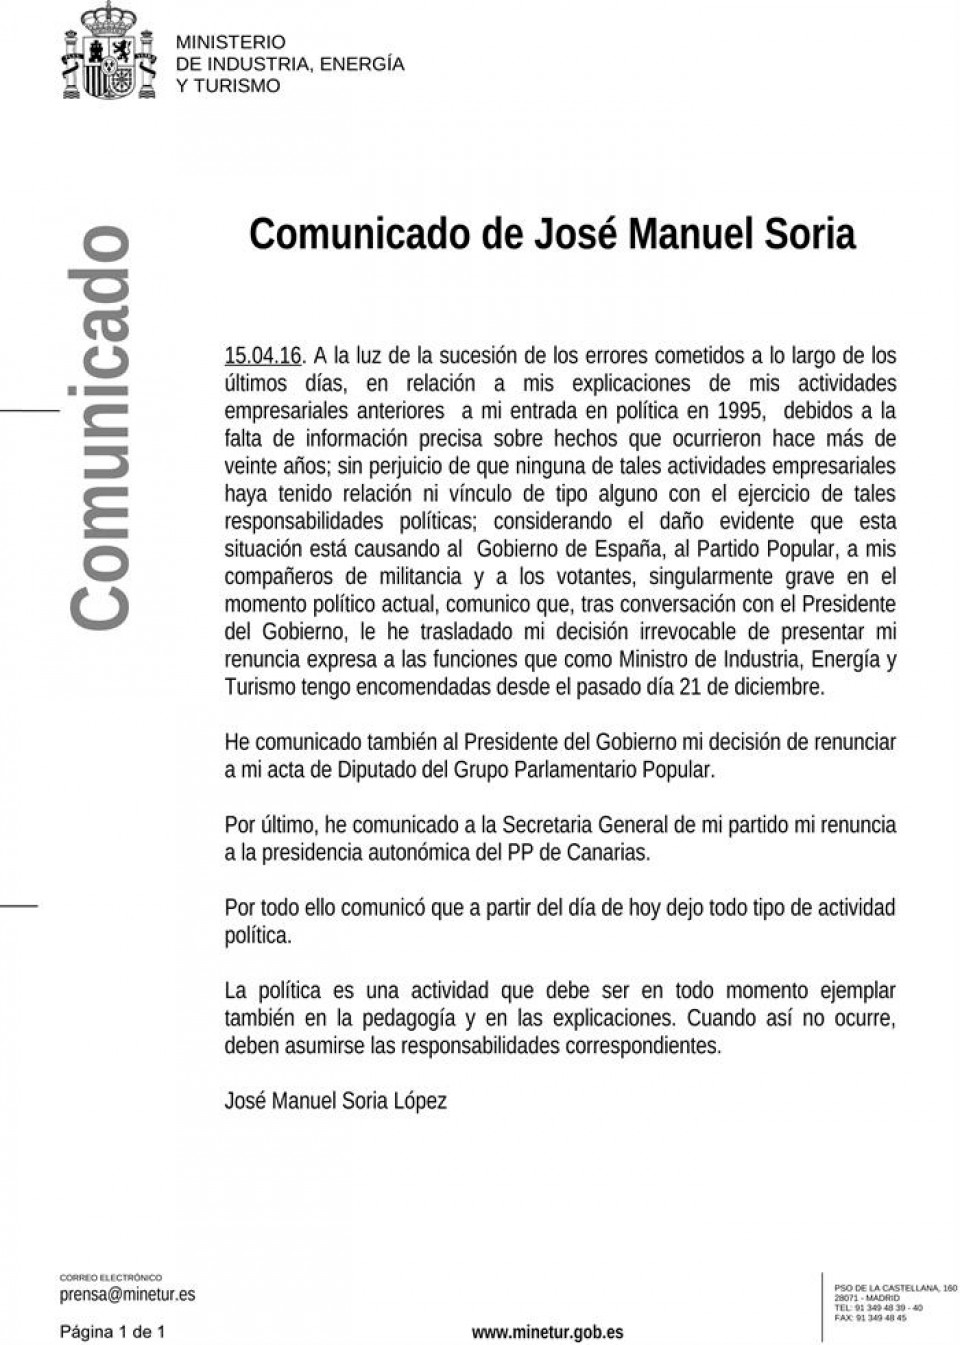 Comunicado íntegro de José Manuel Soria sobre su renuncia